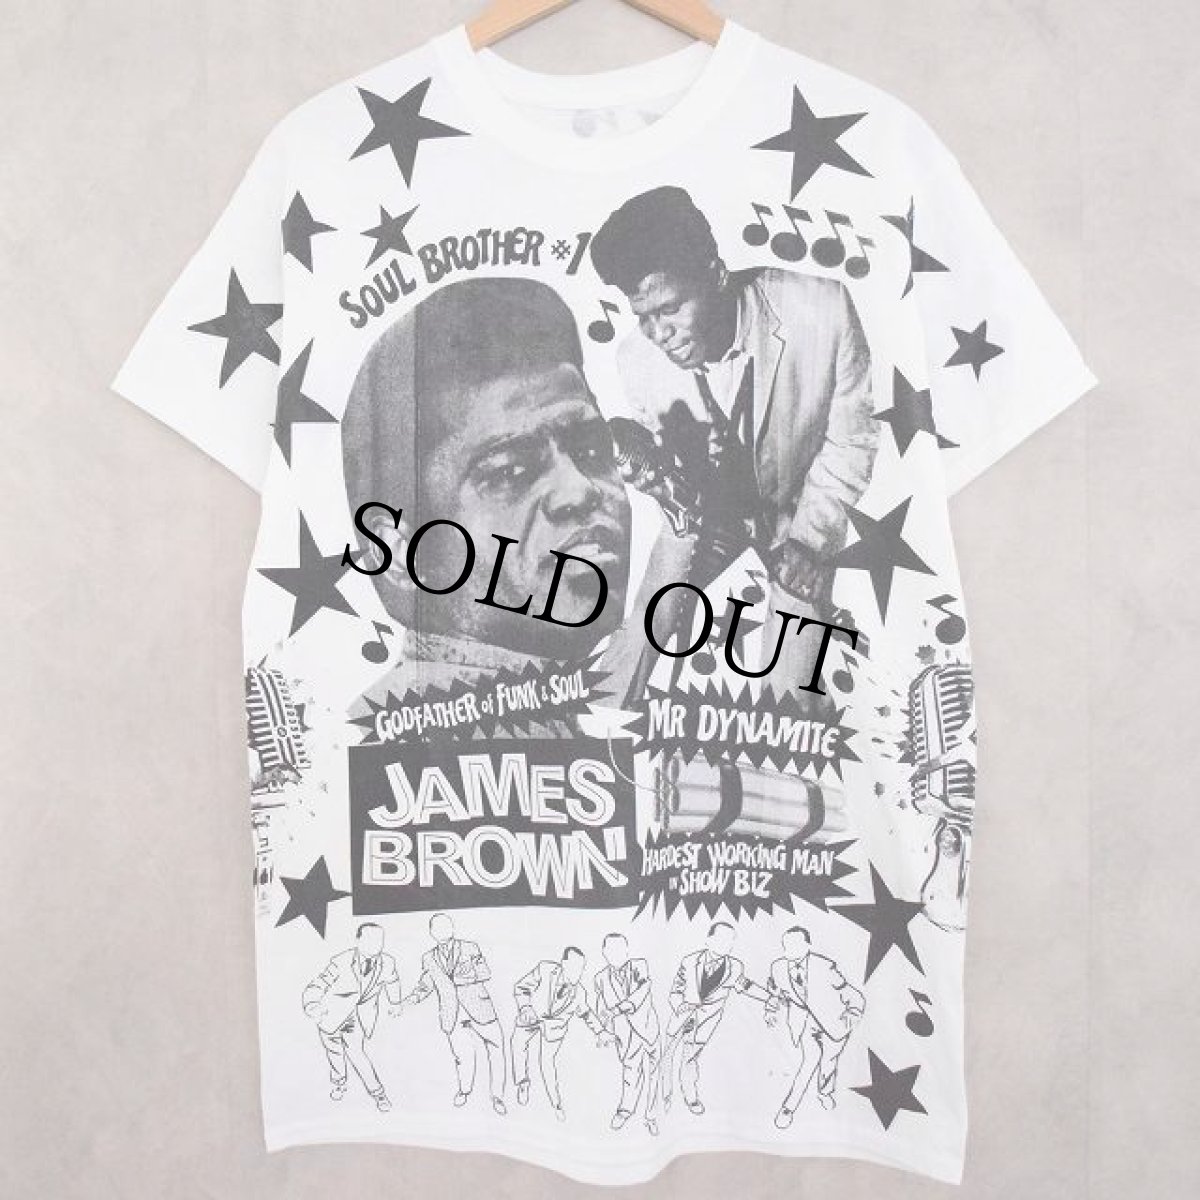 画像1: JAMES BROWN Music T-shirt (1)